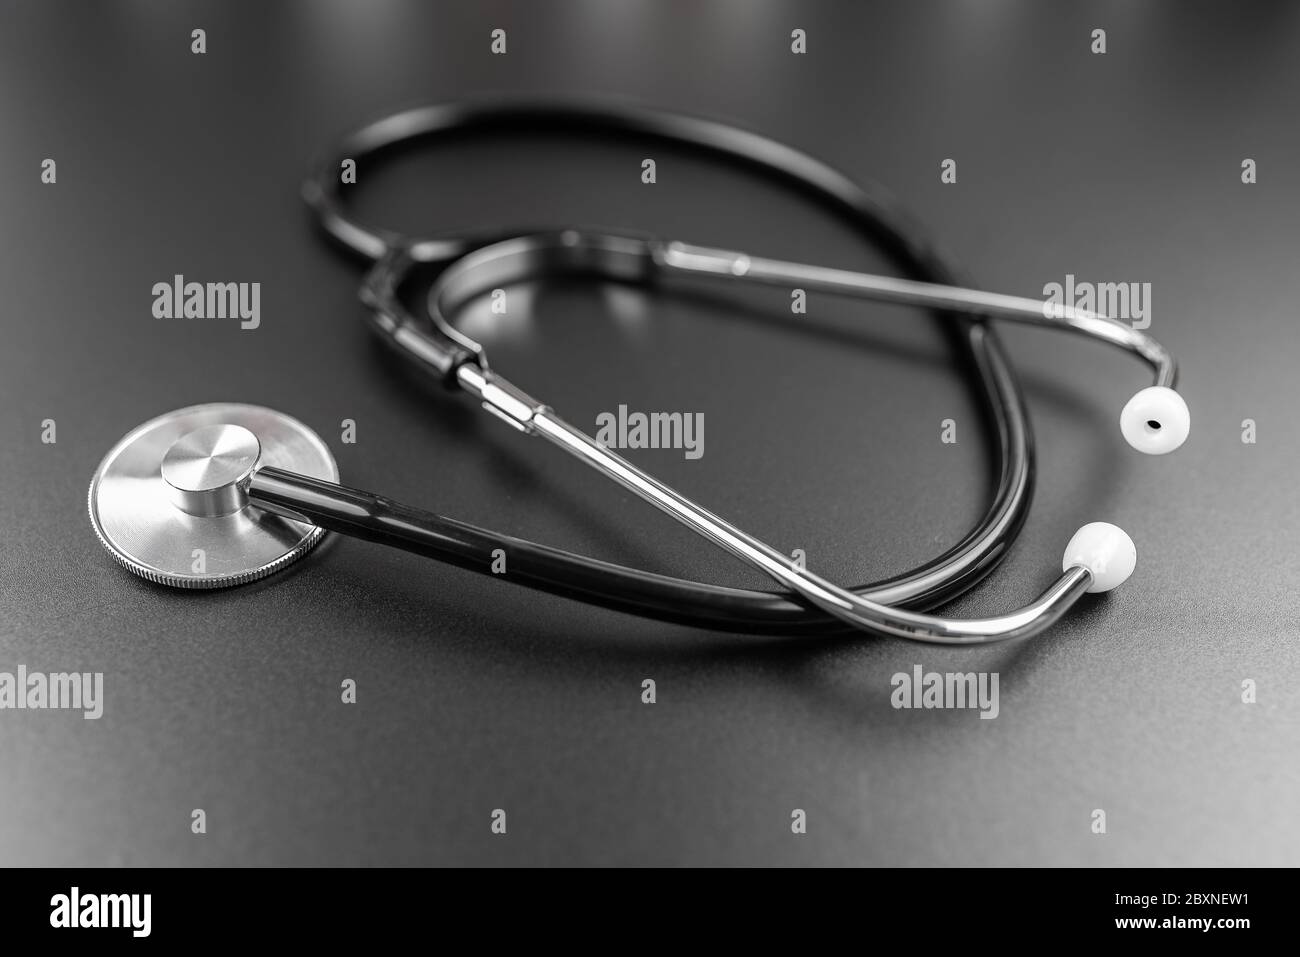 Nahaufnahme des Stethoskops auf dunklem Tischhintergrund, medizinische Untersuchung und Diagnosekonzept Stockfoto